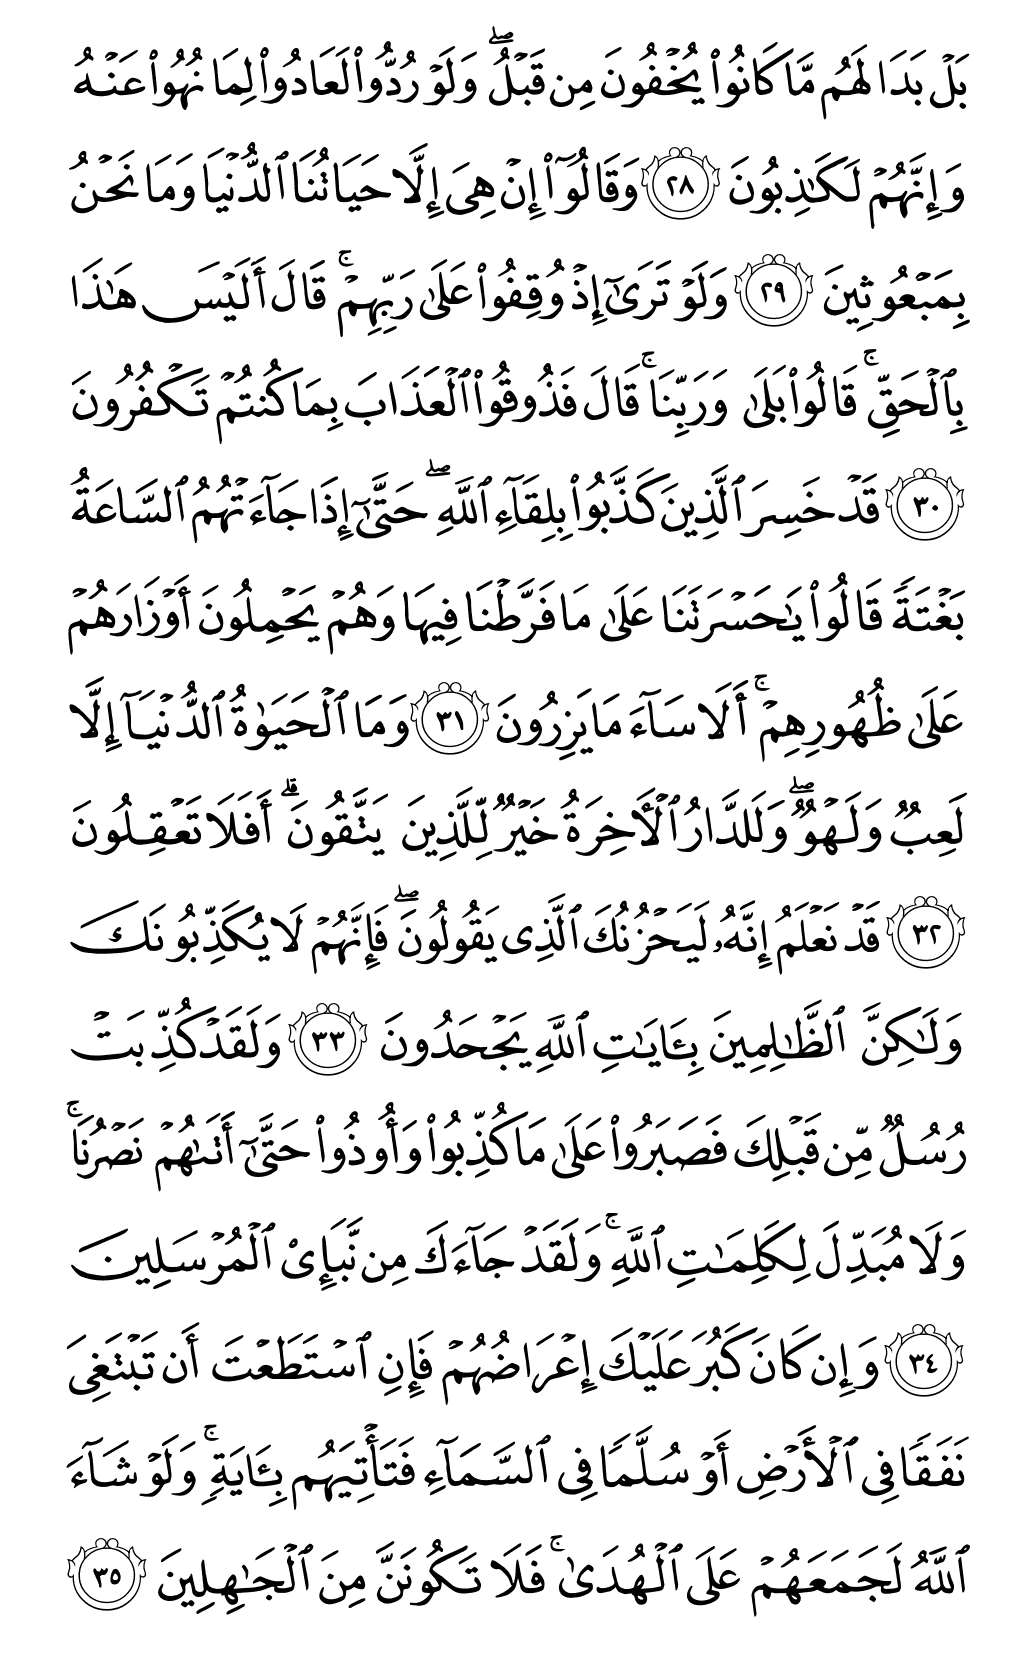 الصفحة رقم 131 من القرآن الكريم